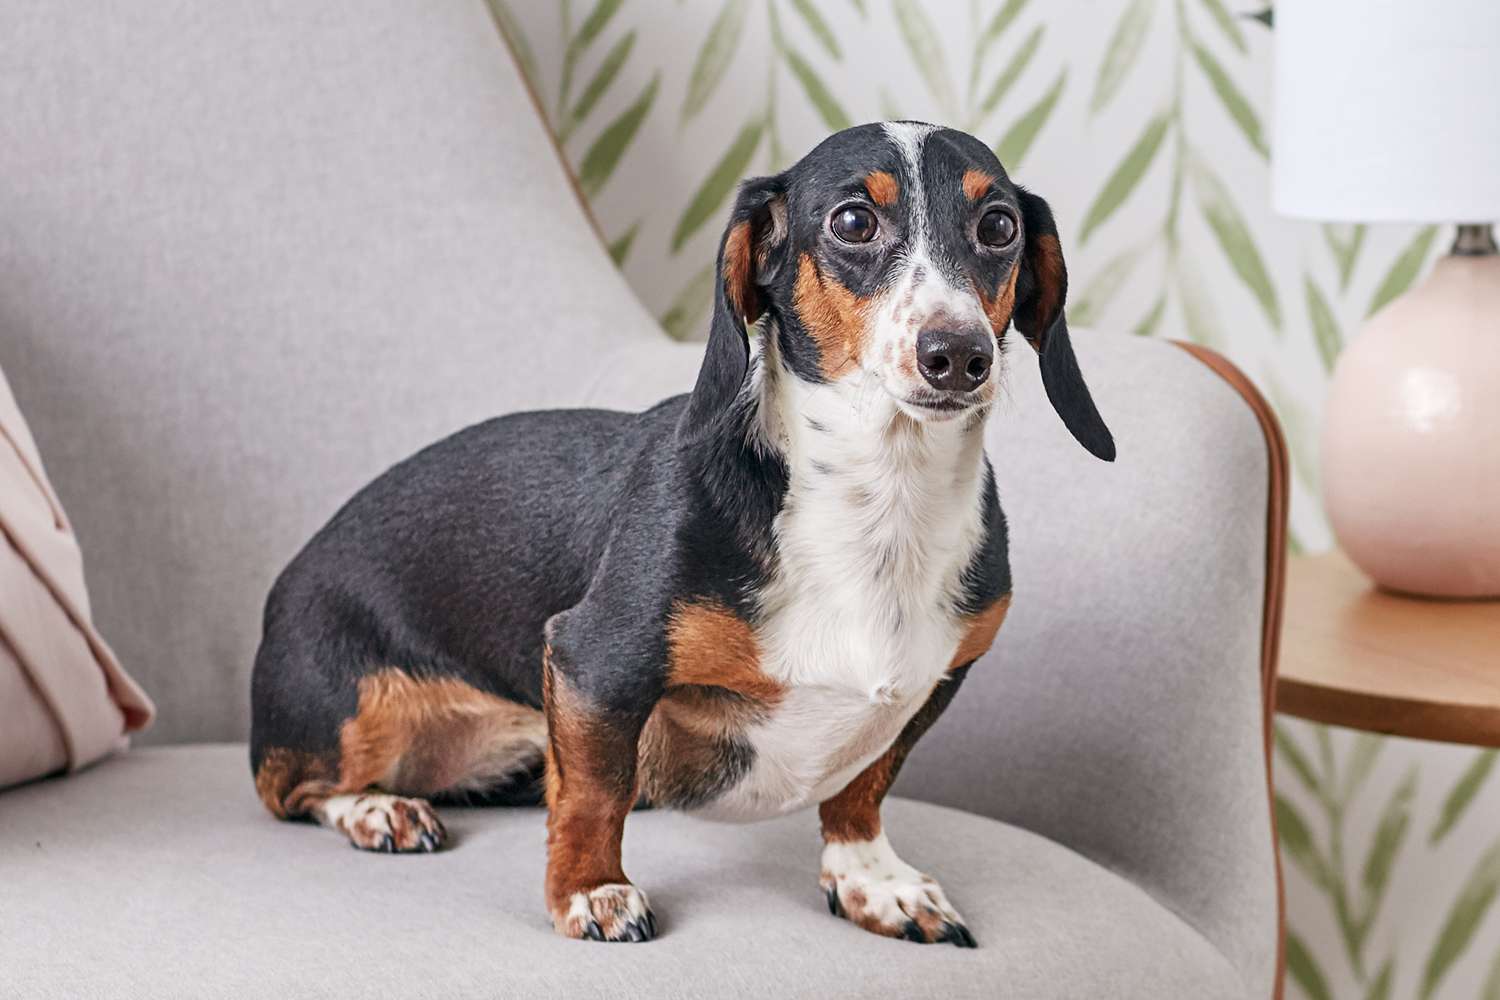 A dachshund on a chair